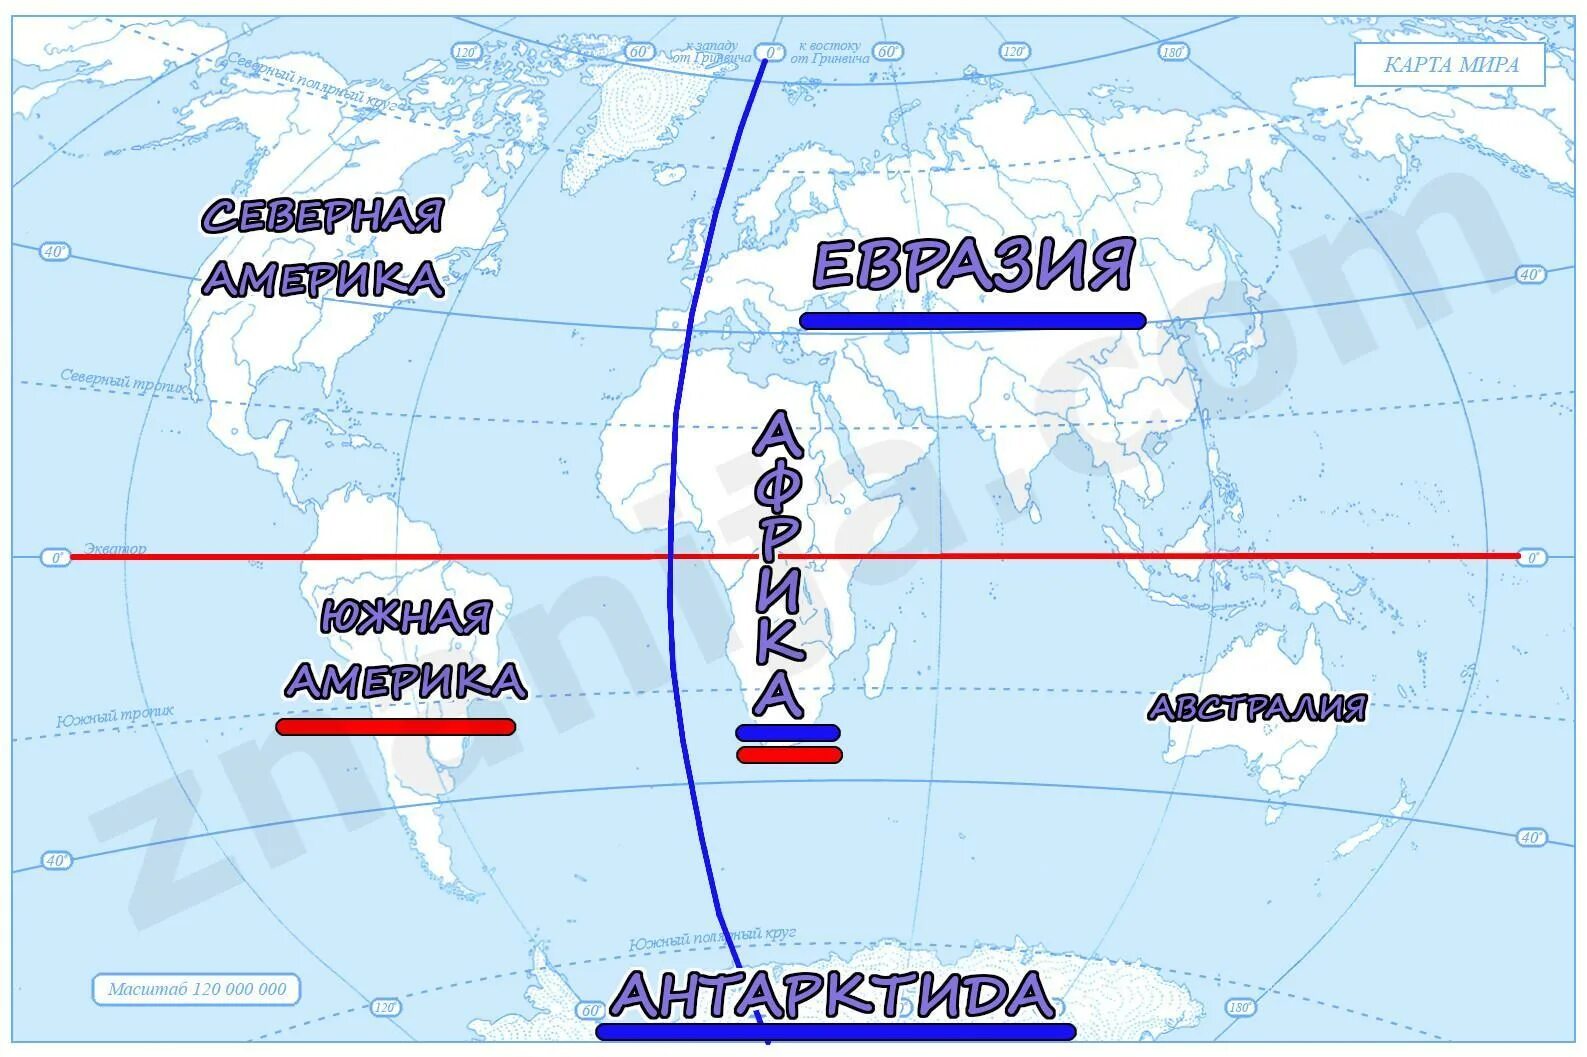 Экватор северной америки на карте. Нулевой Меридиан пересекает материки. Какой материк пересекает Экватор и нулевой Меридиан. Какие океаны пересекает нулевой Меридиан?.